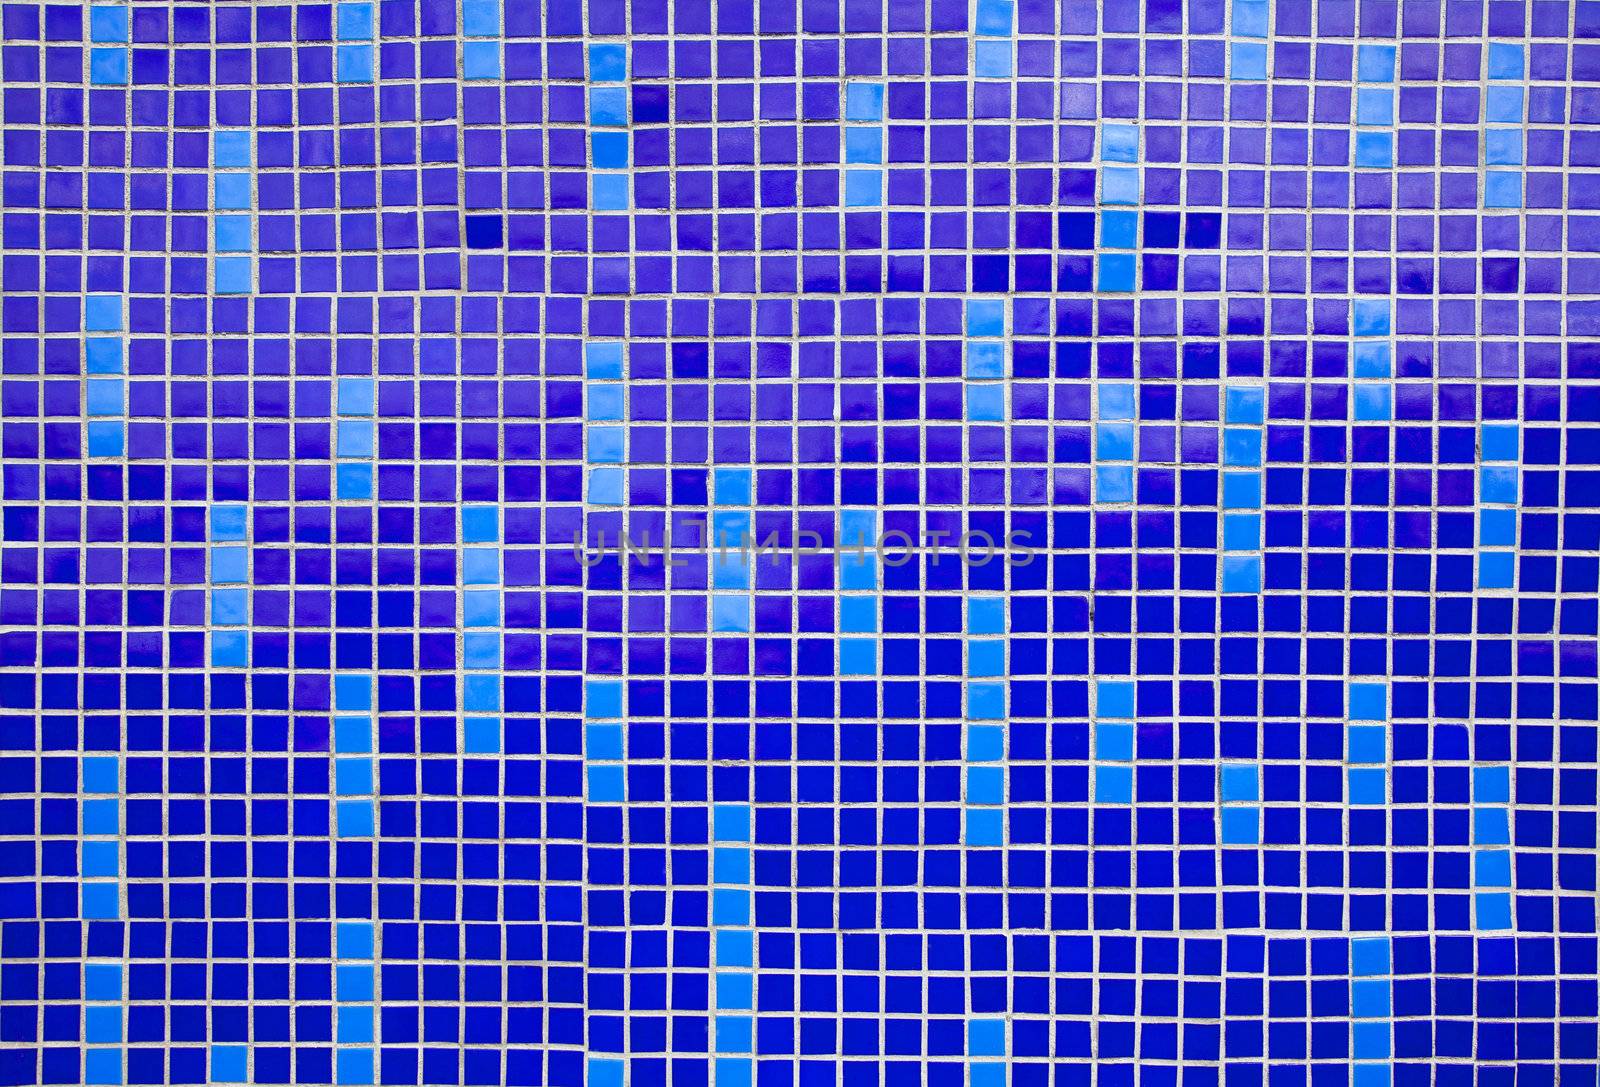 Blue mosaic pattern by RawGroup